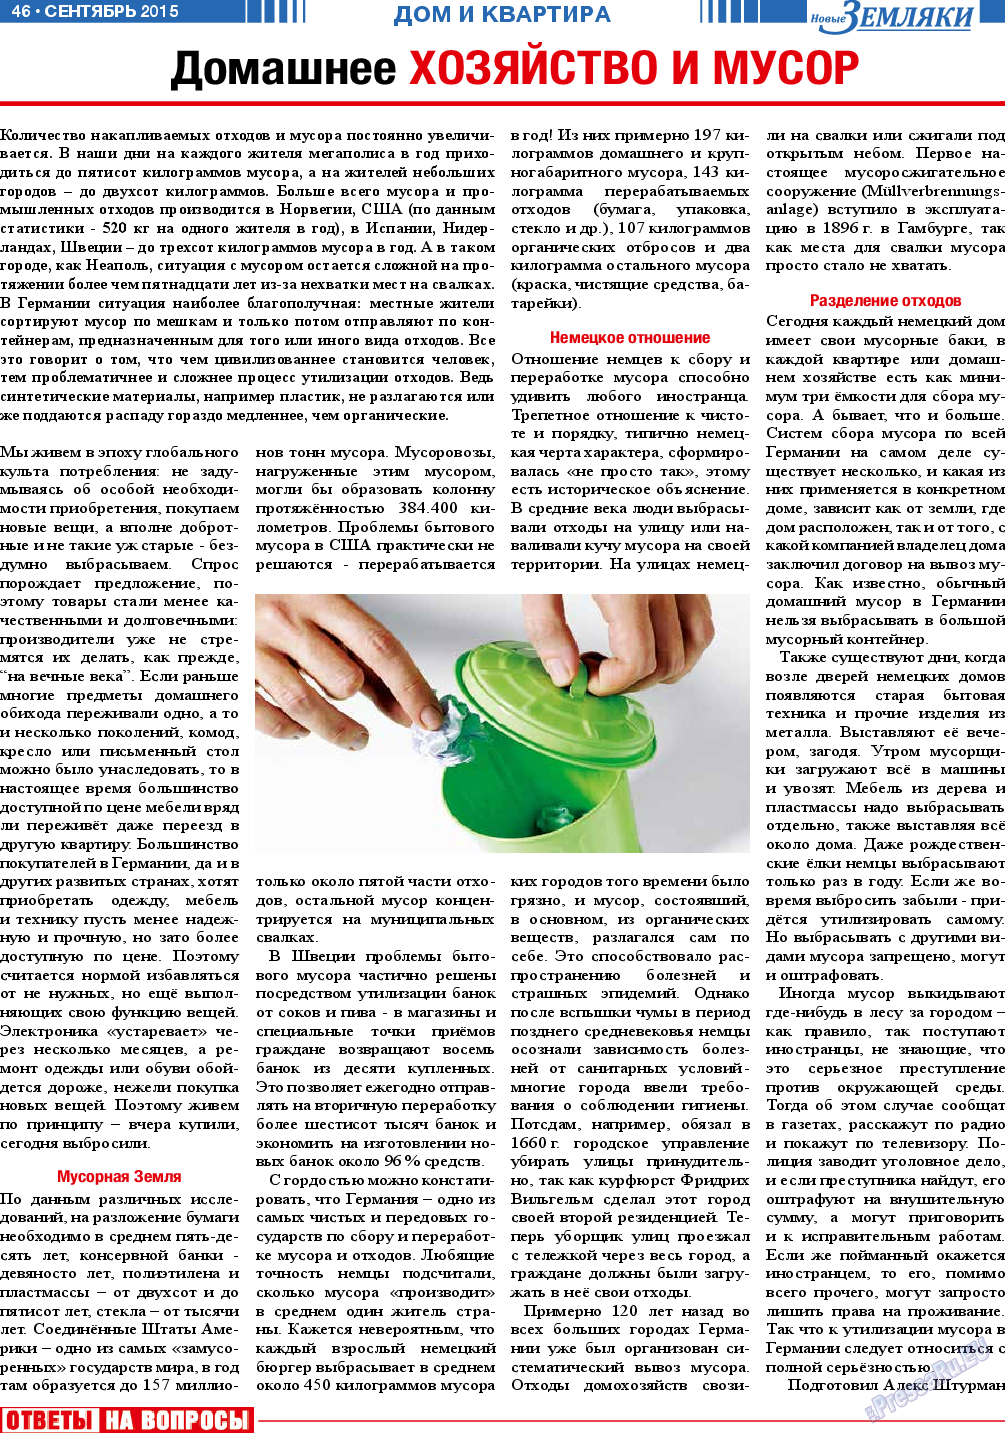 Новые Земляки, газета. 2015 №9 стр.46